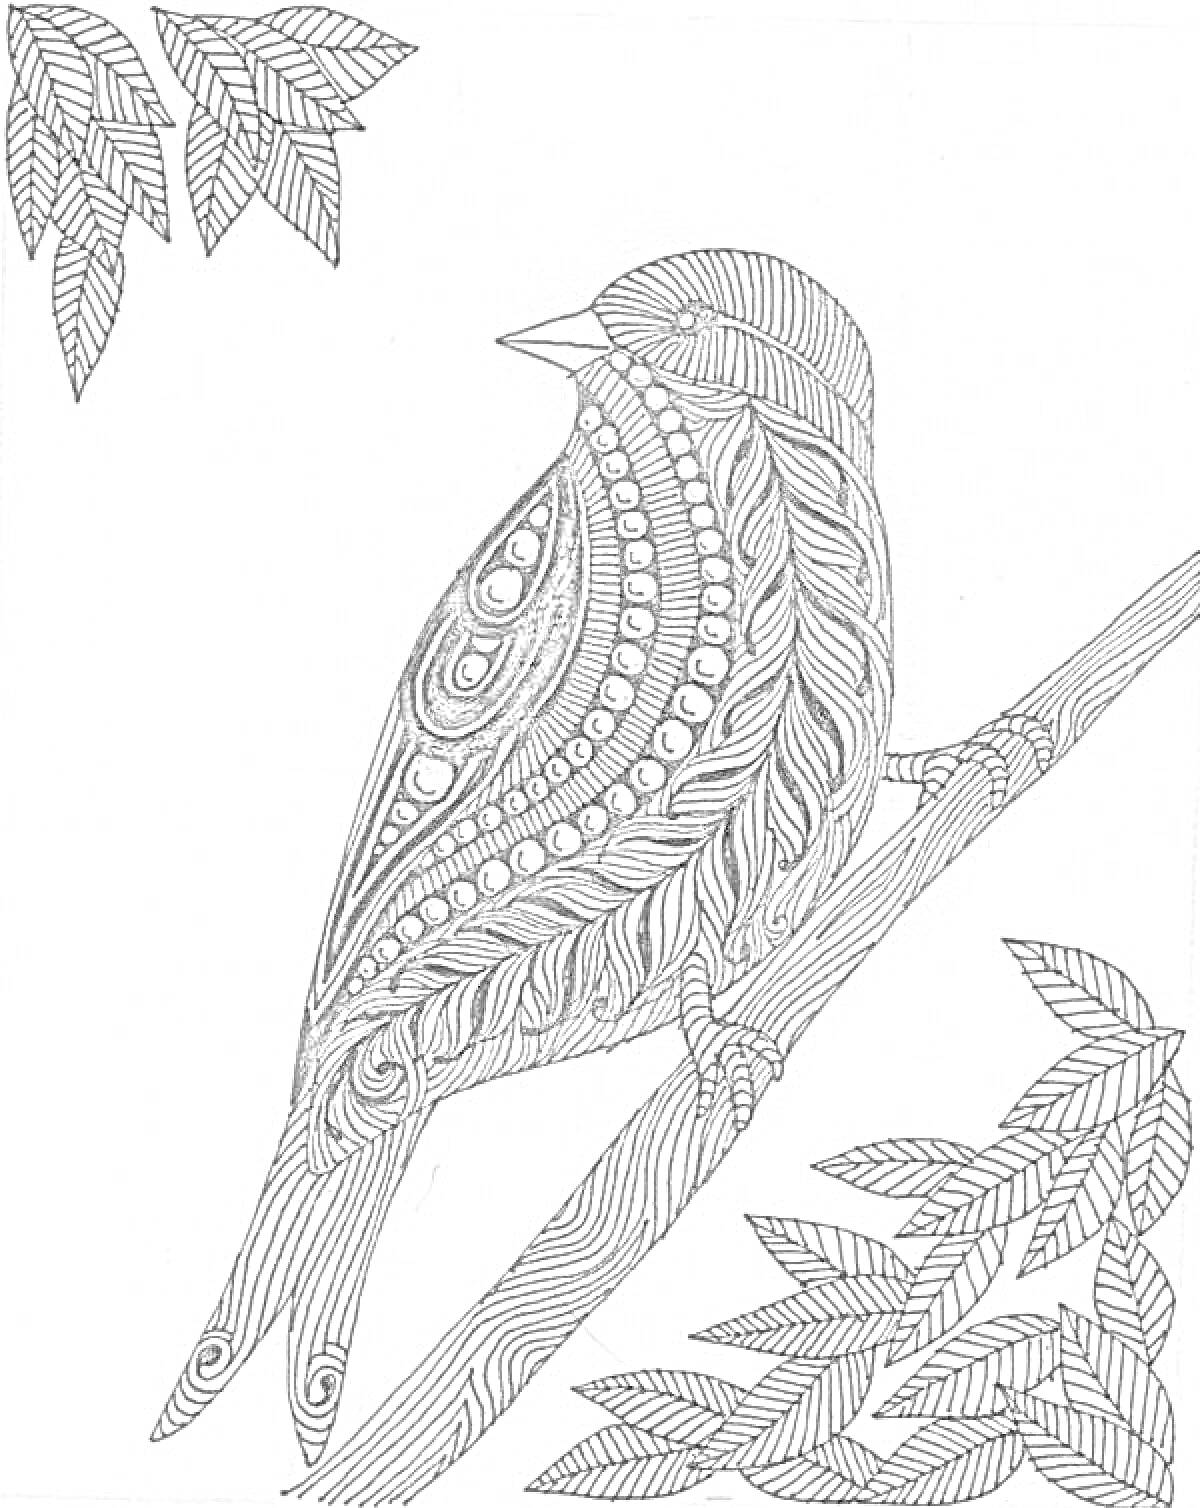 Птица на ветке с декоративными узорами и листьями